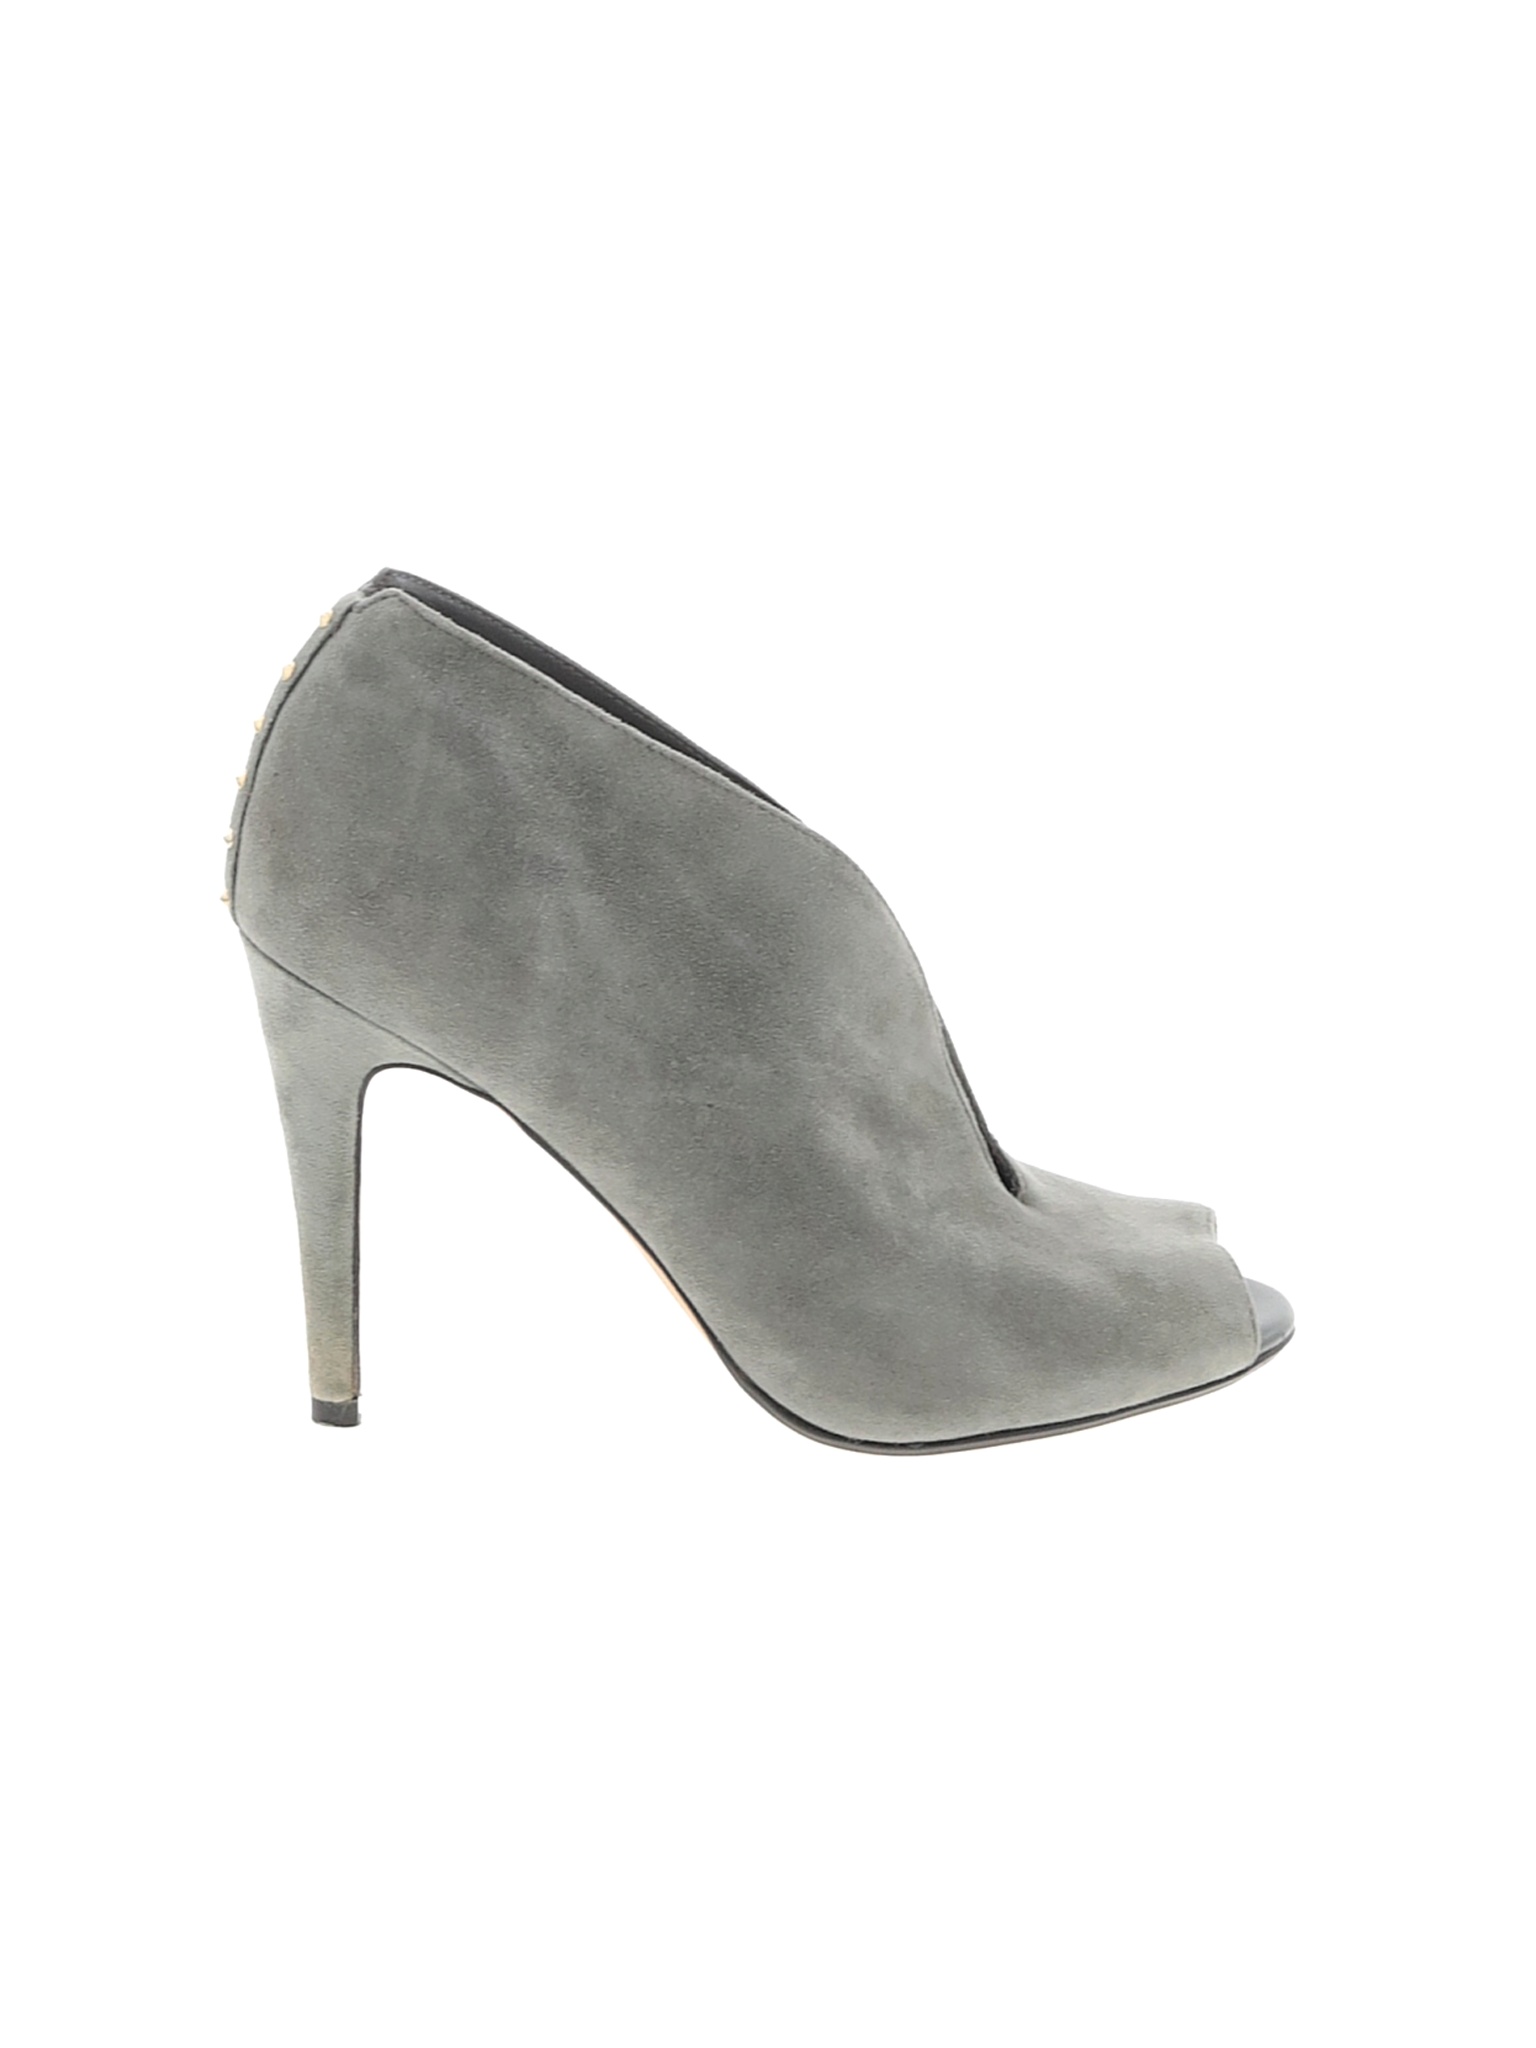 Halogen Women Gray Heels US 7 | eBay